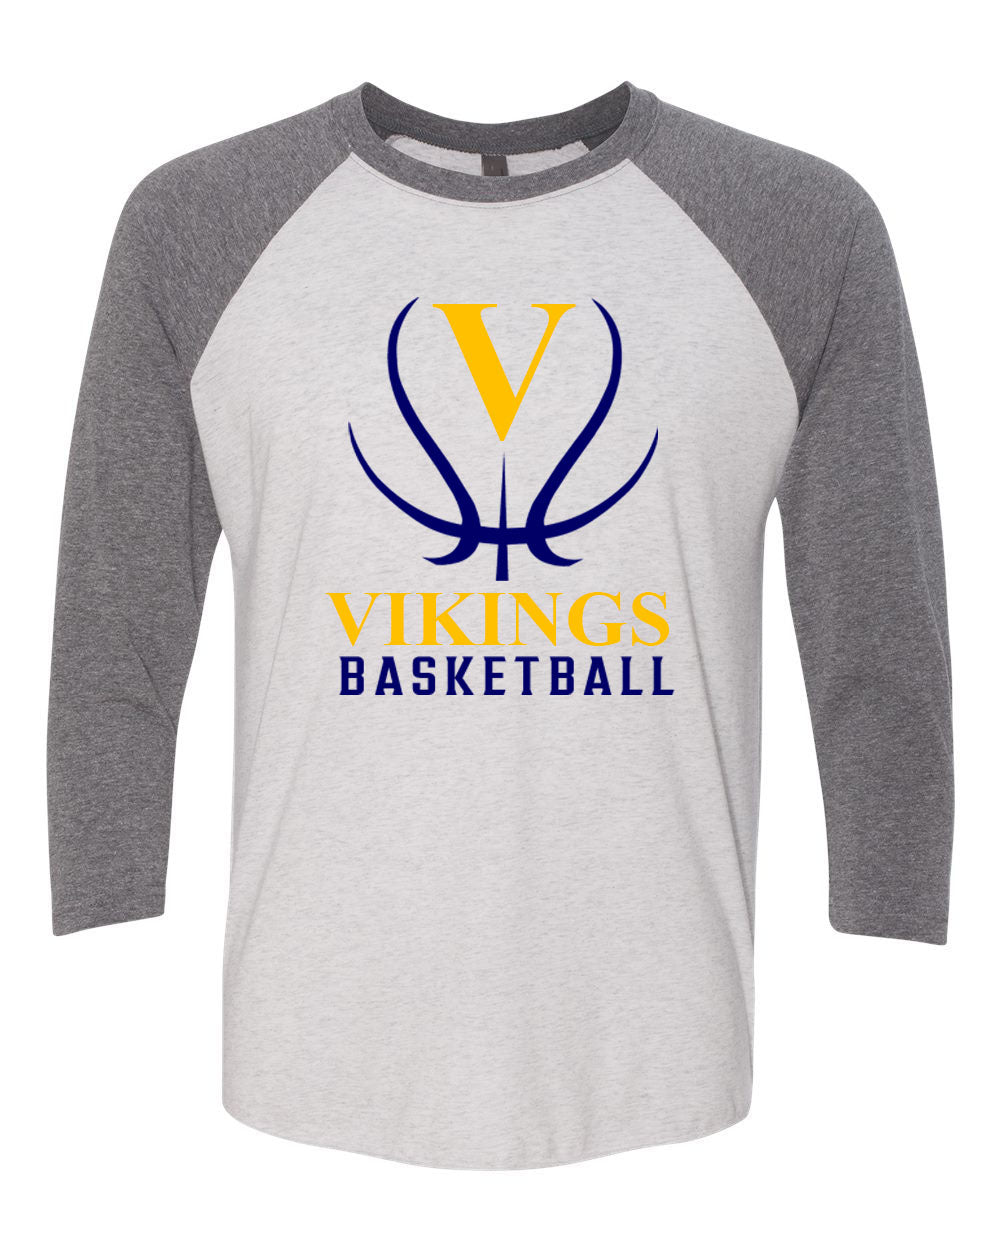 Vikings Basketball Design 3 raglan shirt